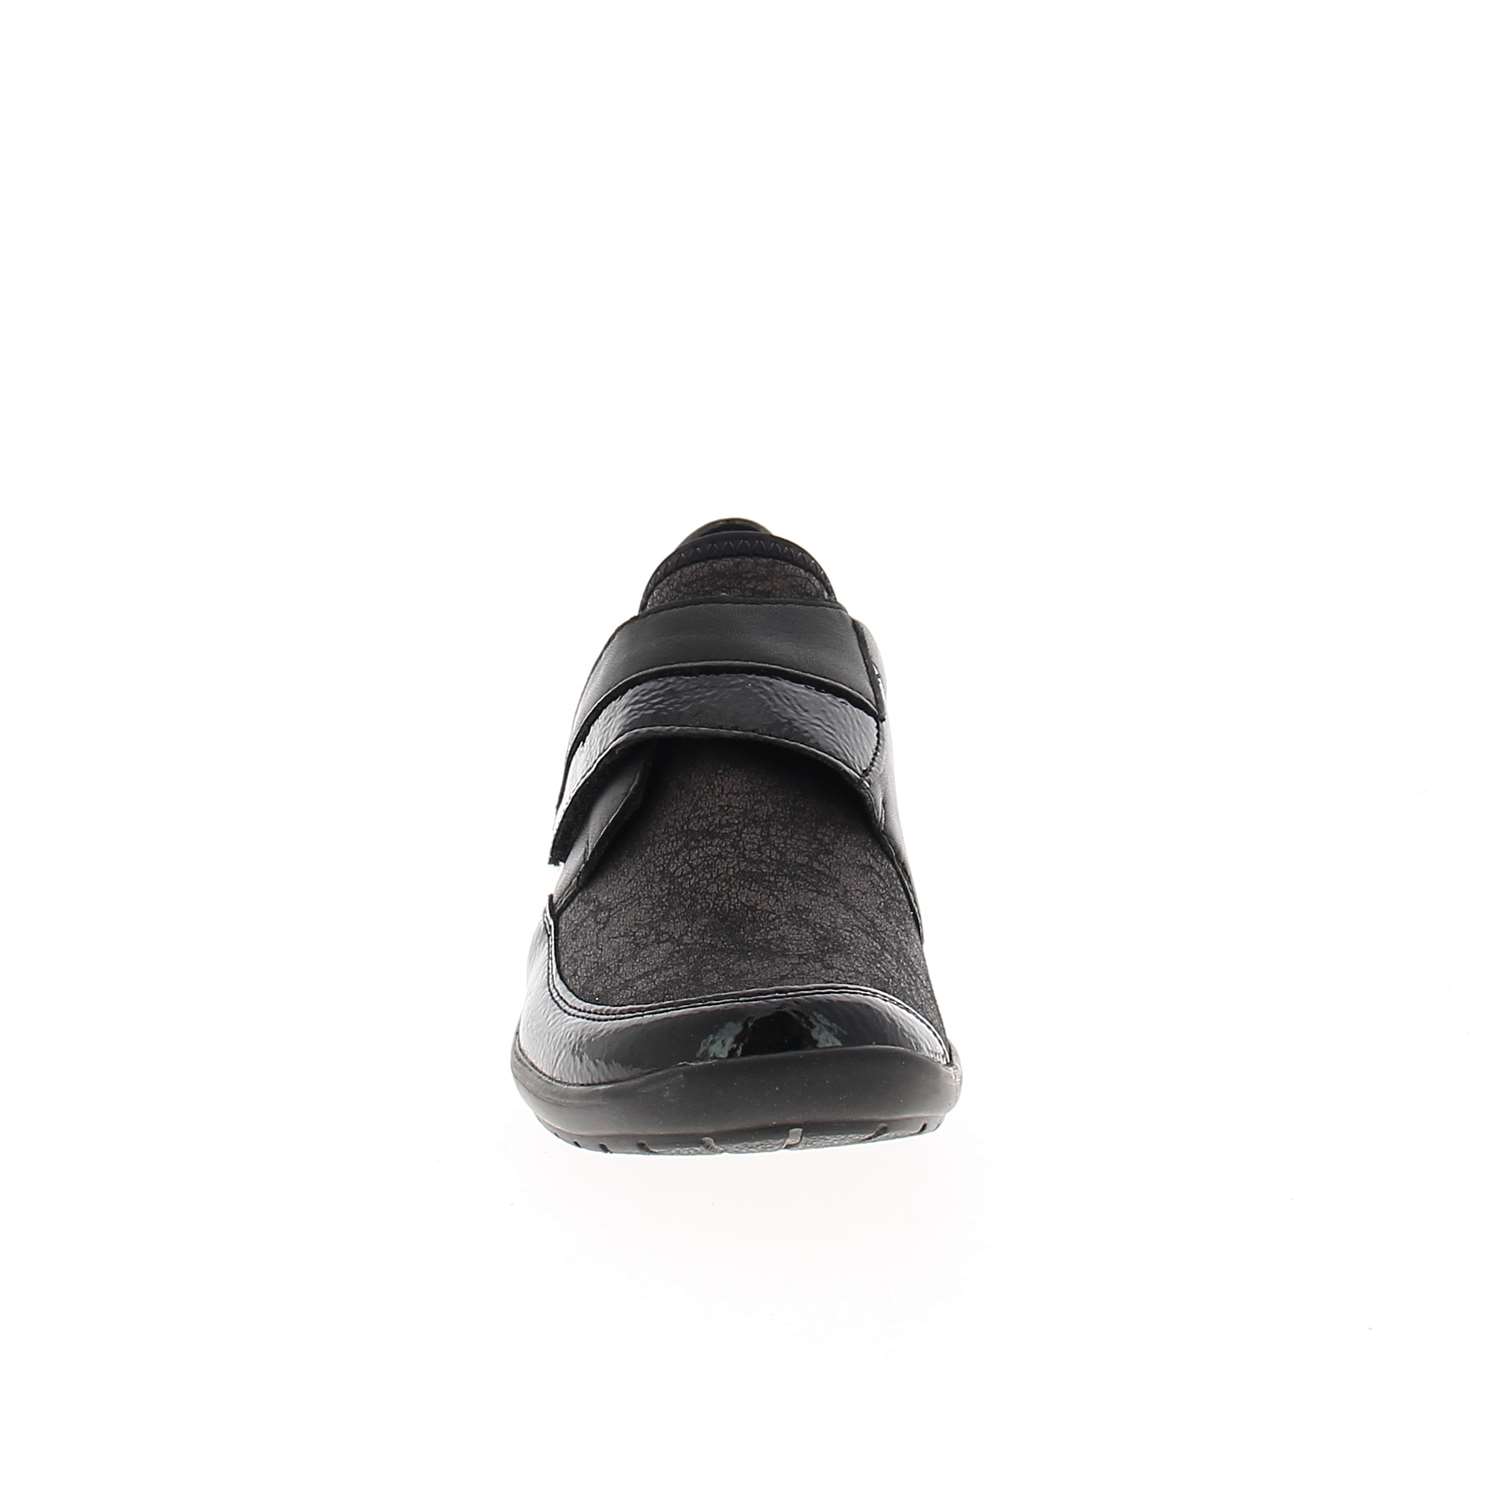 03 - RELIO - REMONTE - Chaussures à lacets - Textile